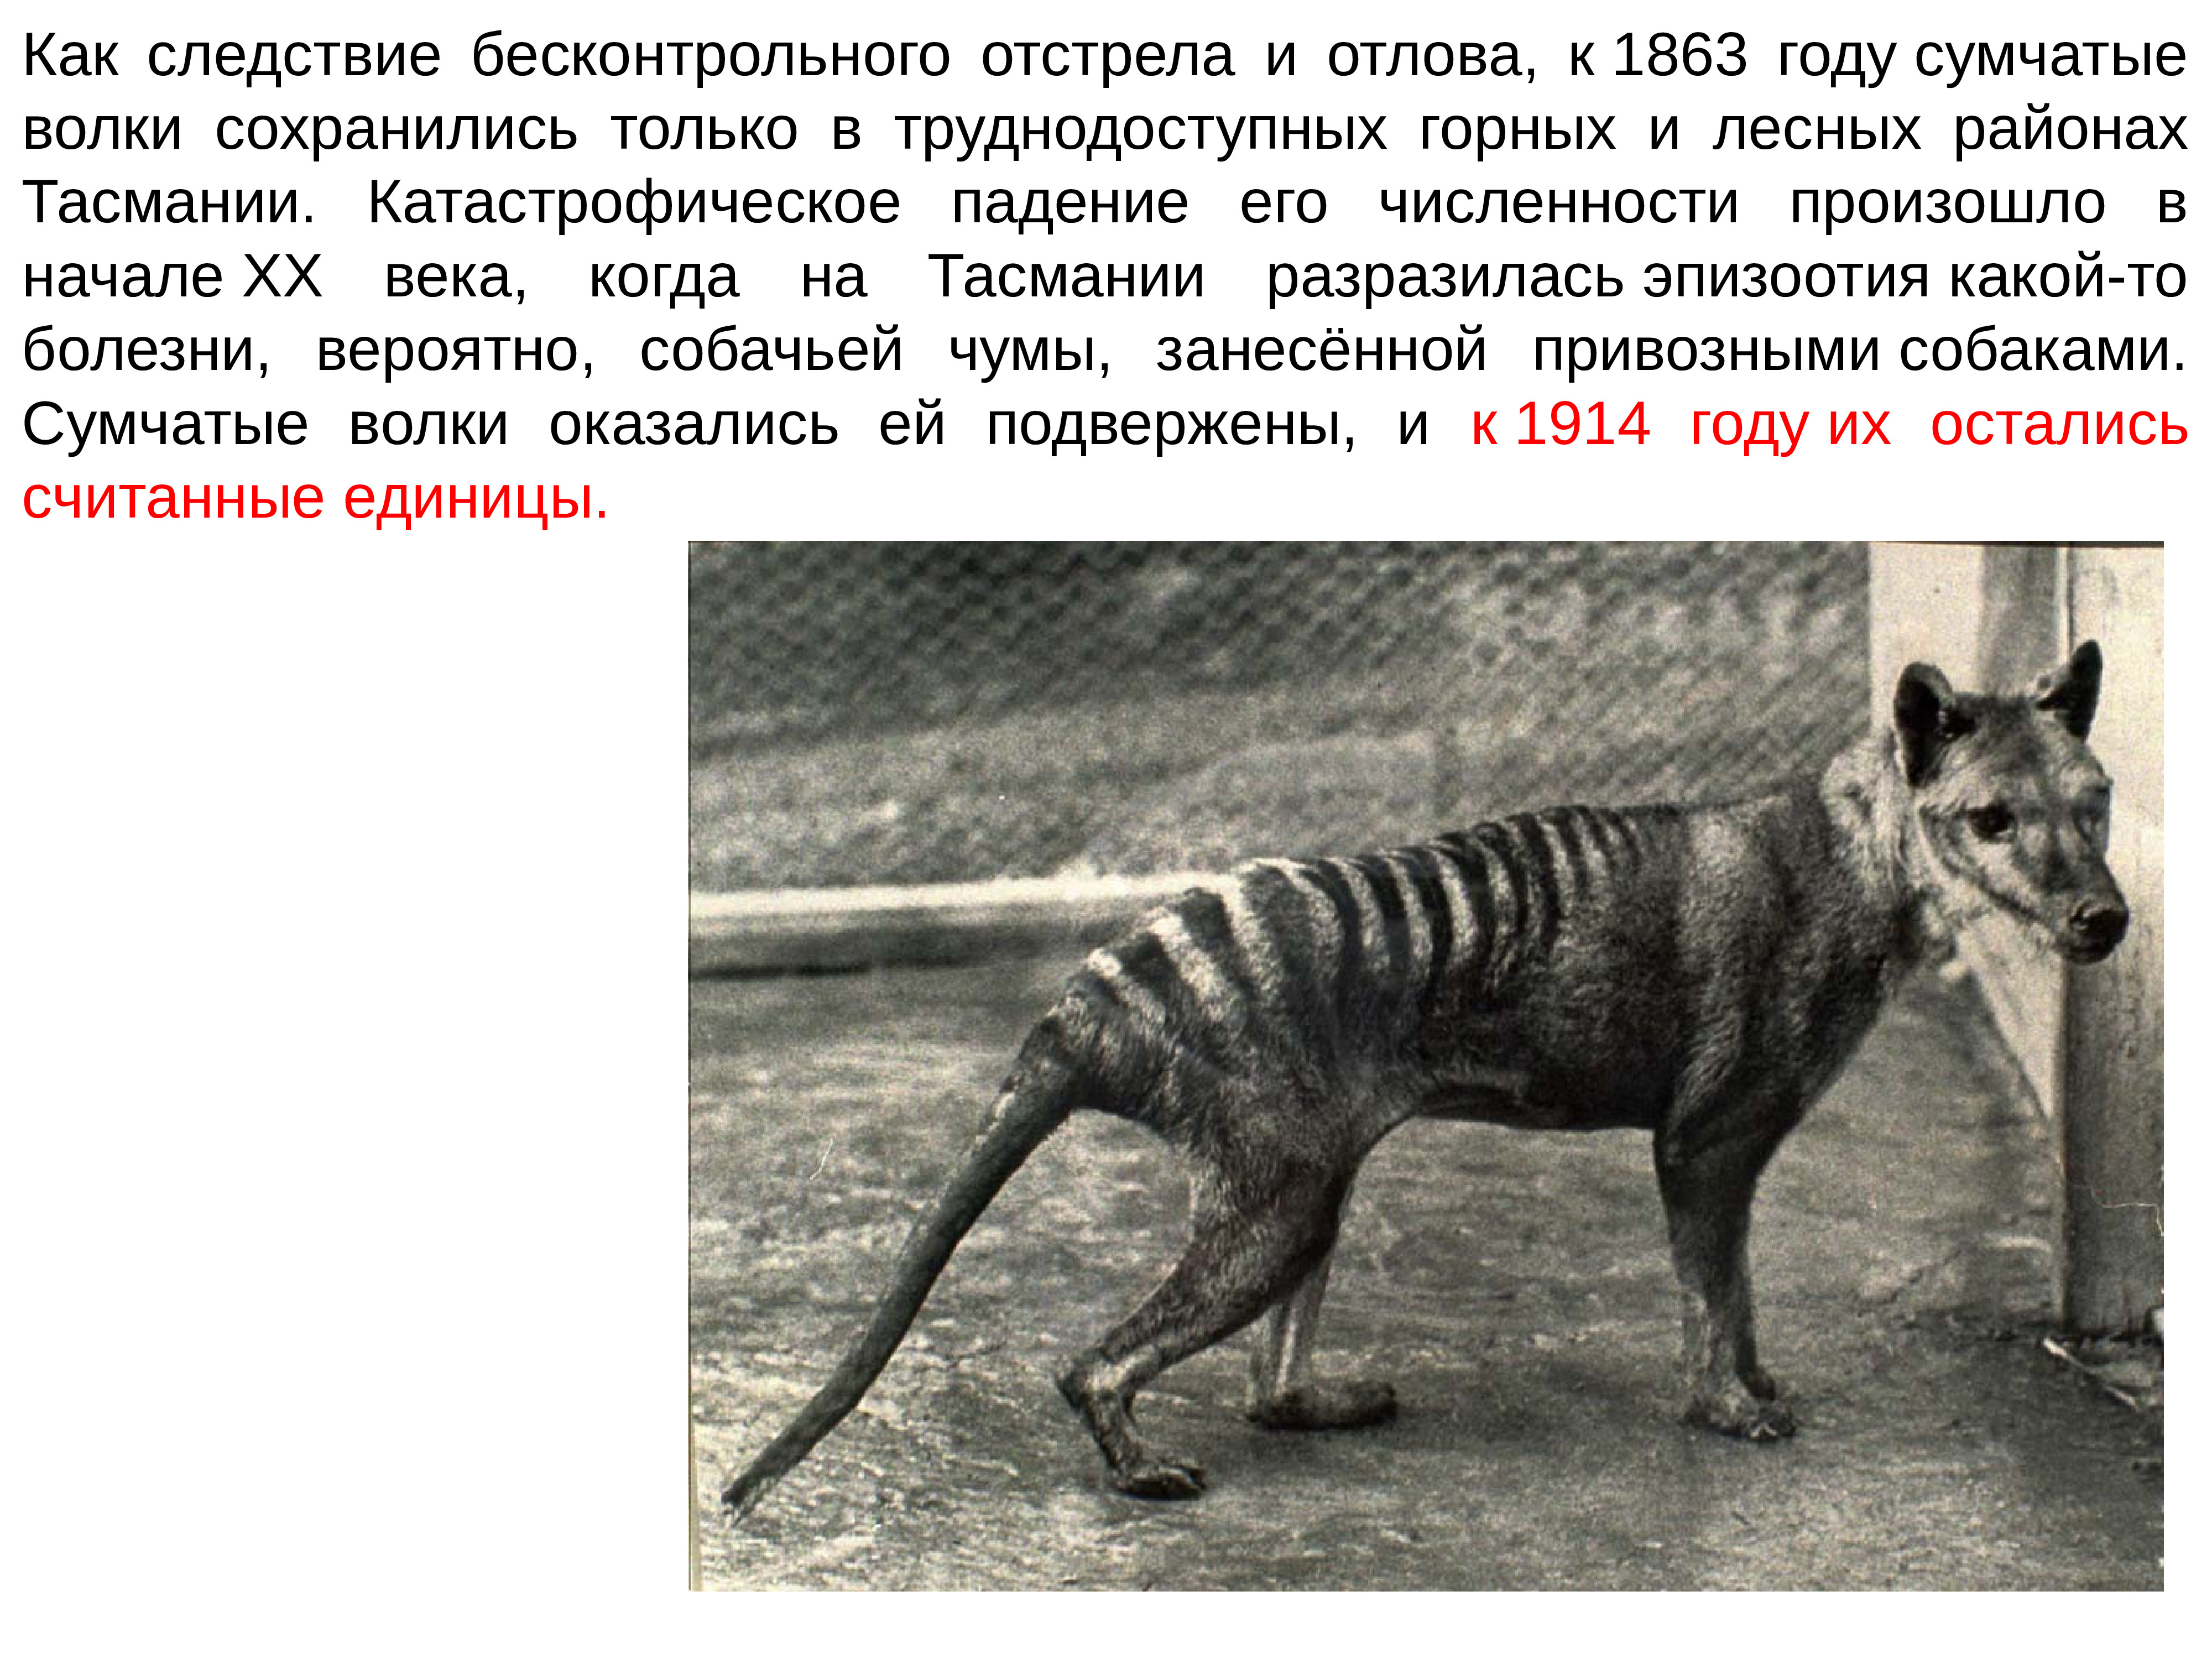 Сумчатый волк в Московском зоопарке